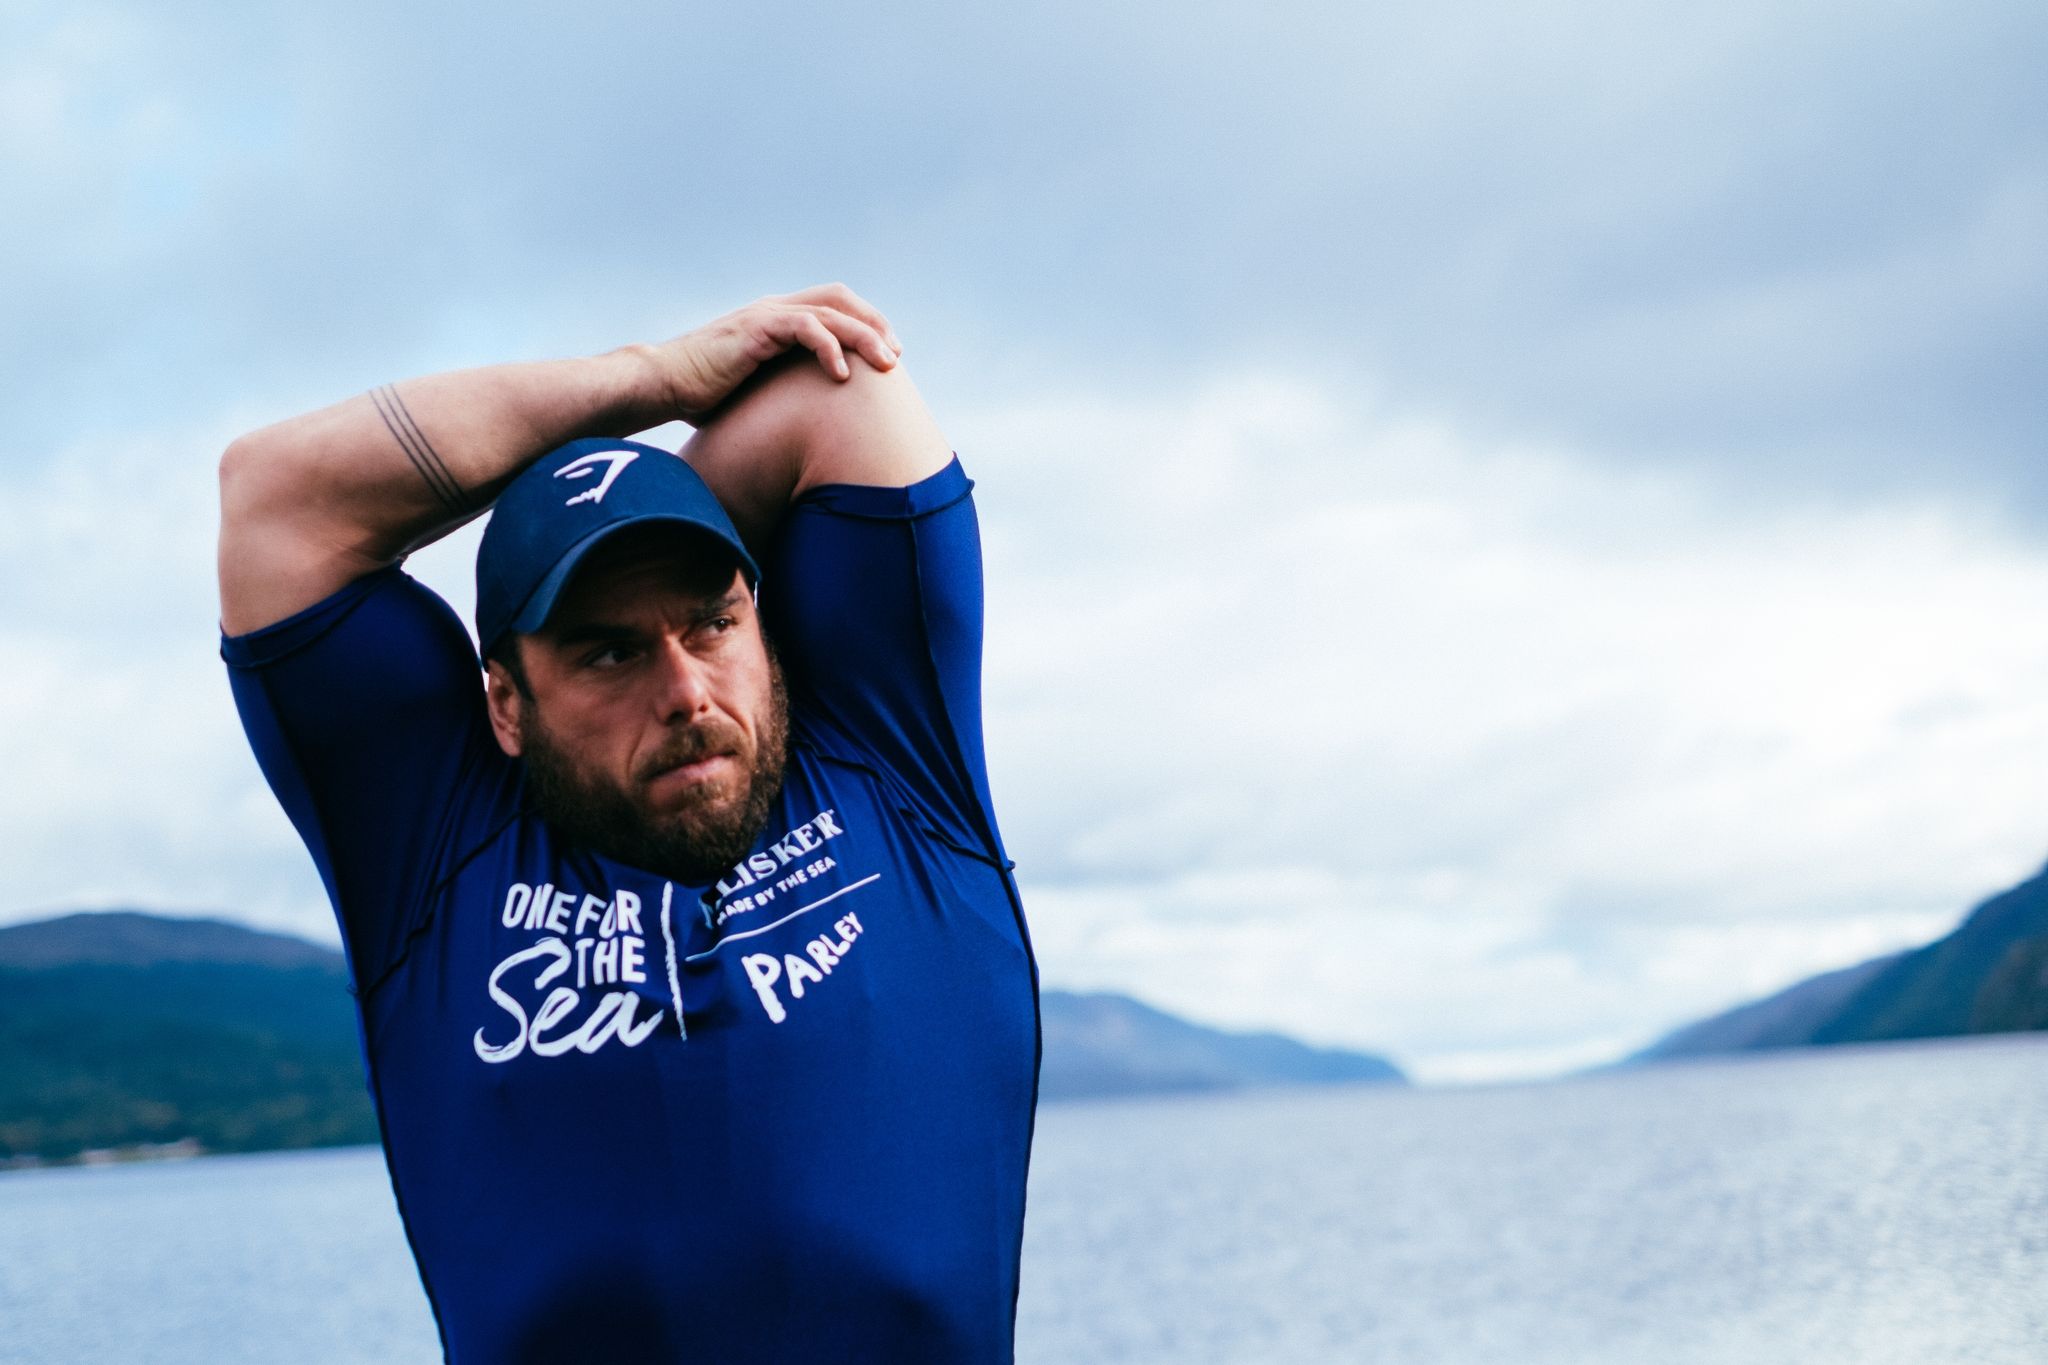 Der Extremabenteurer Ross Edgley hat den Rekord für das längste jemals durchgeführte Freiwasserschwimmen im Loch Ness gebrochen hat.